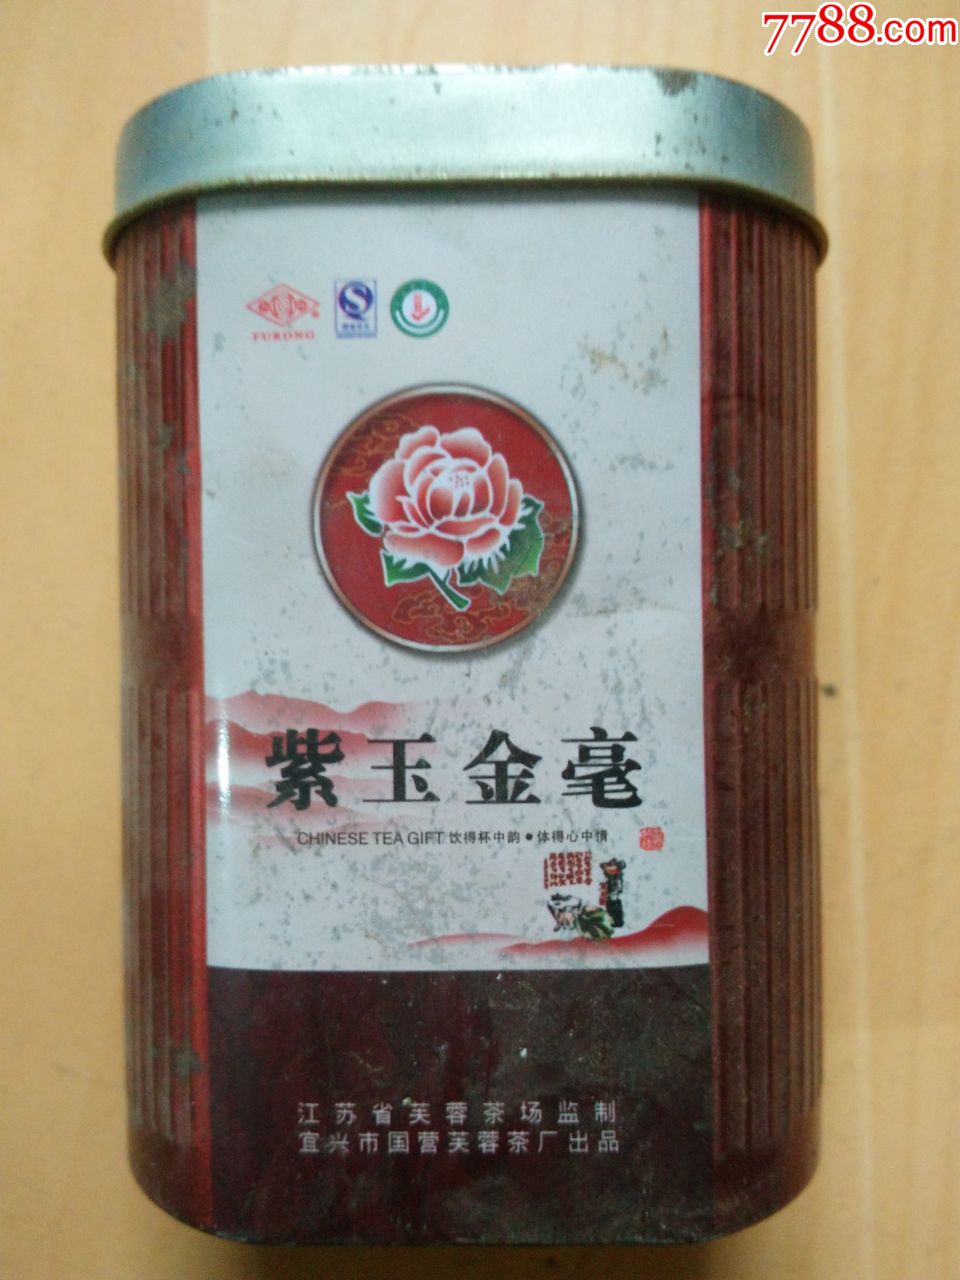 "紫玉金毫"茶叶桶(茶花图,江苏宜兴国营芙蓉茶厂金属质桶)